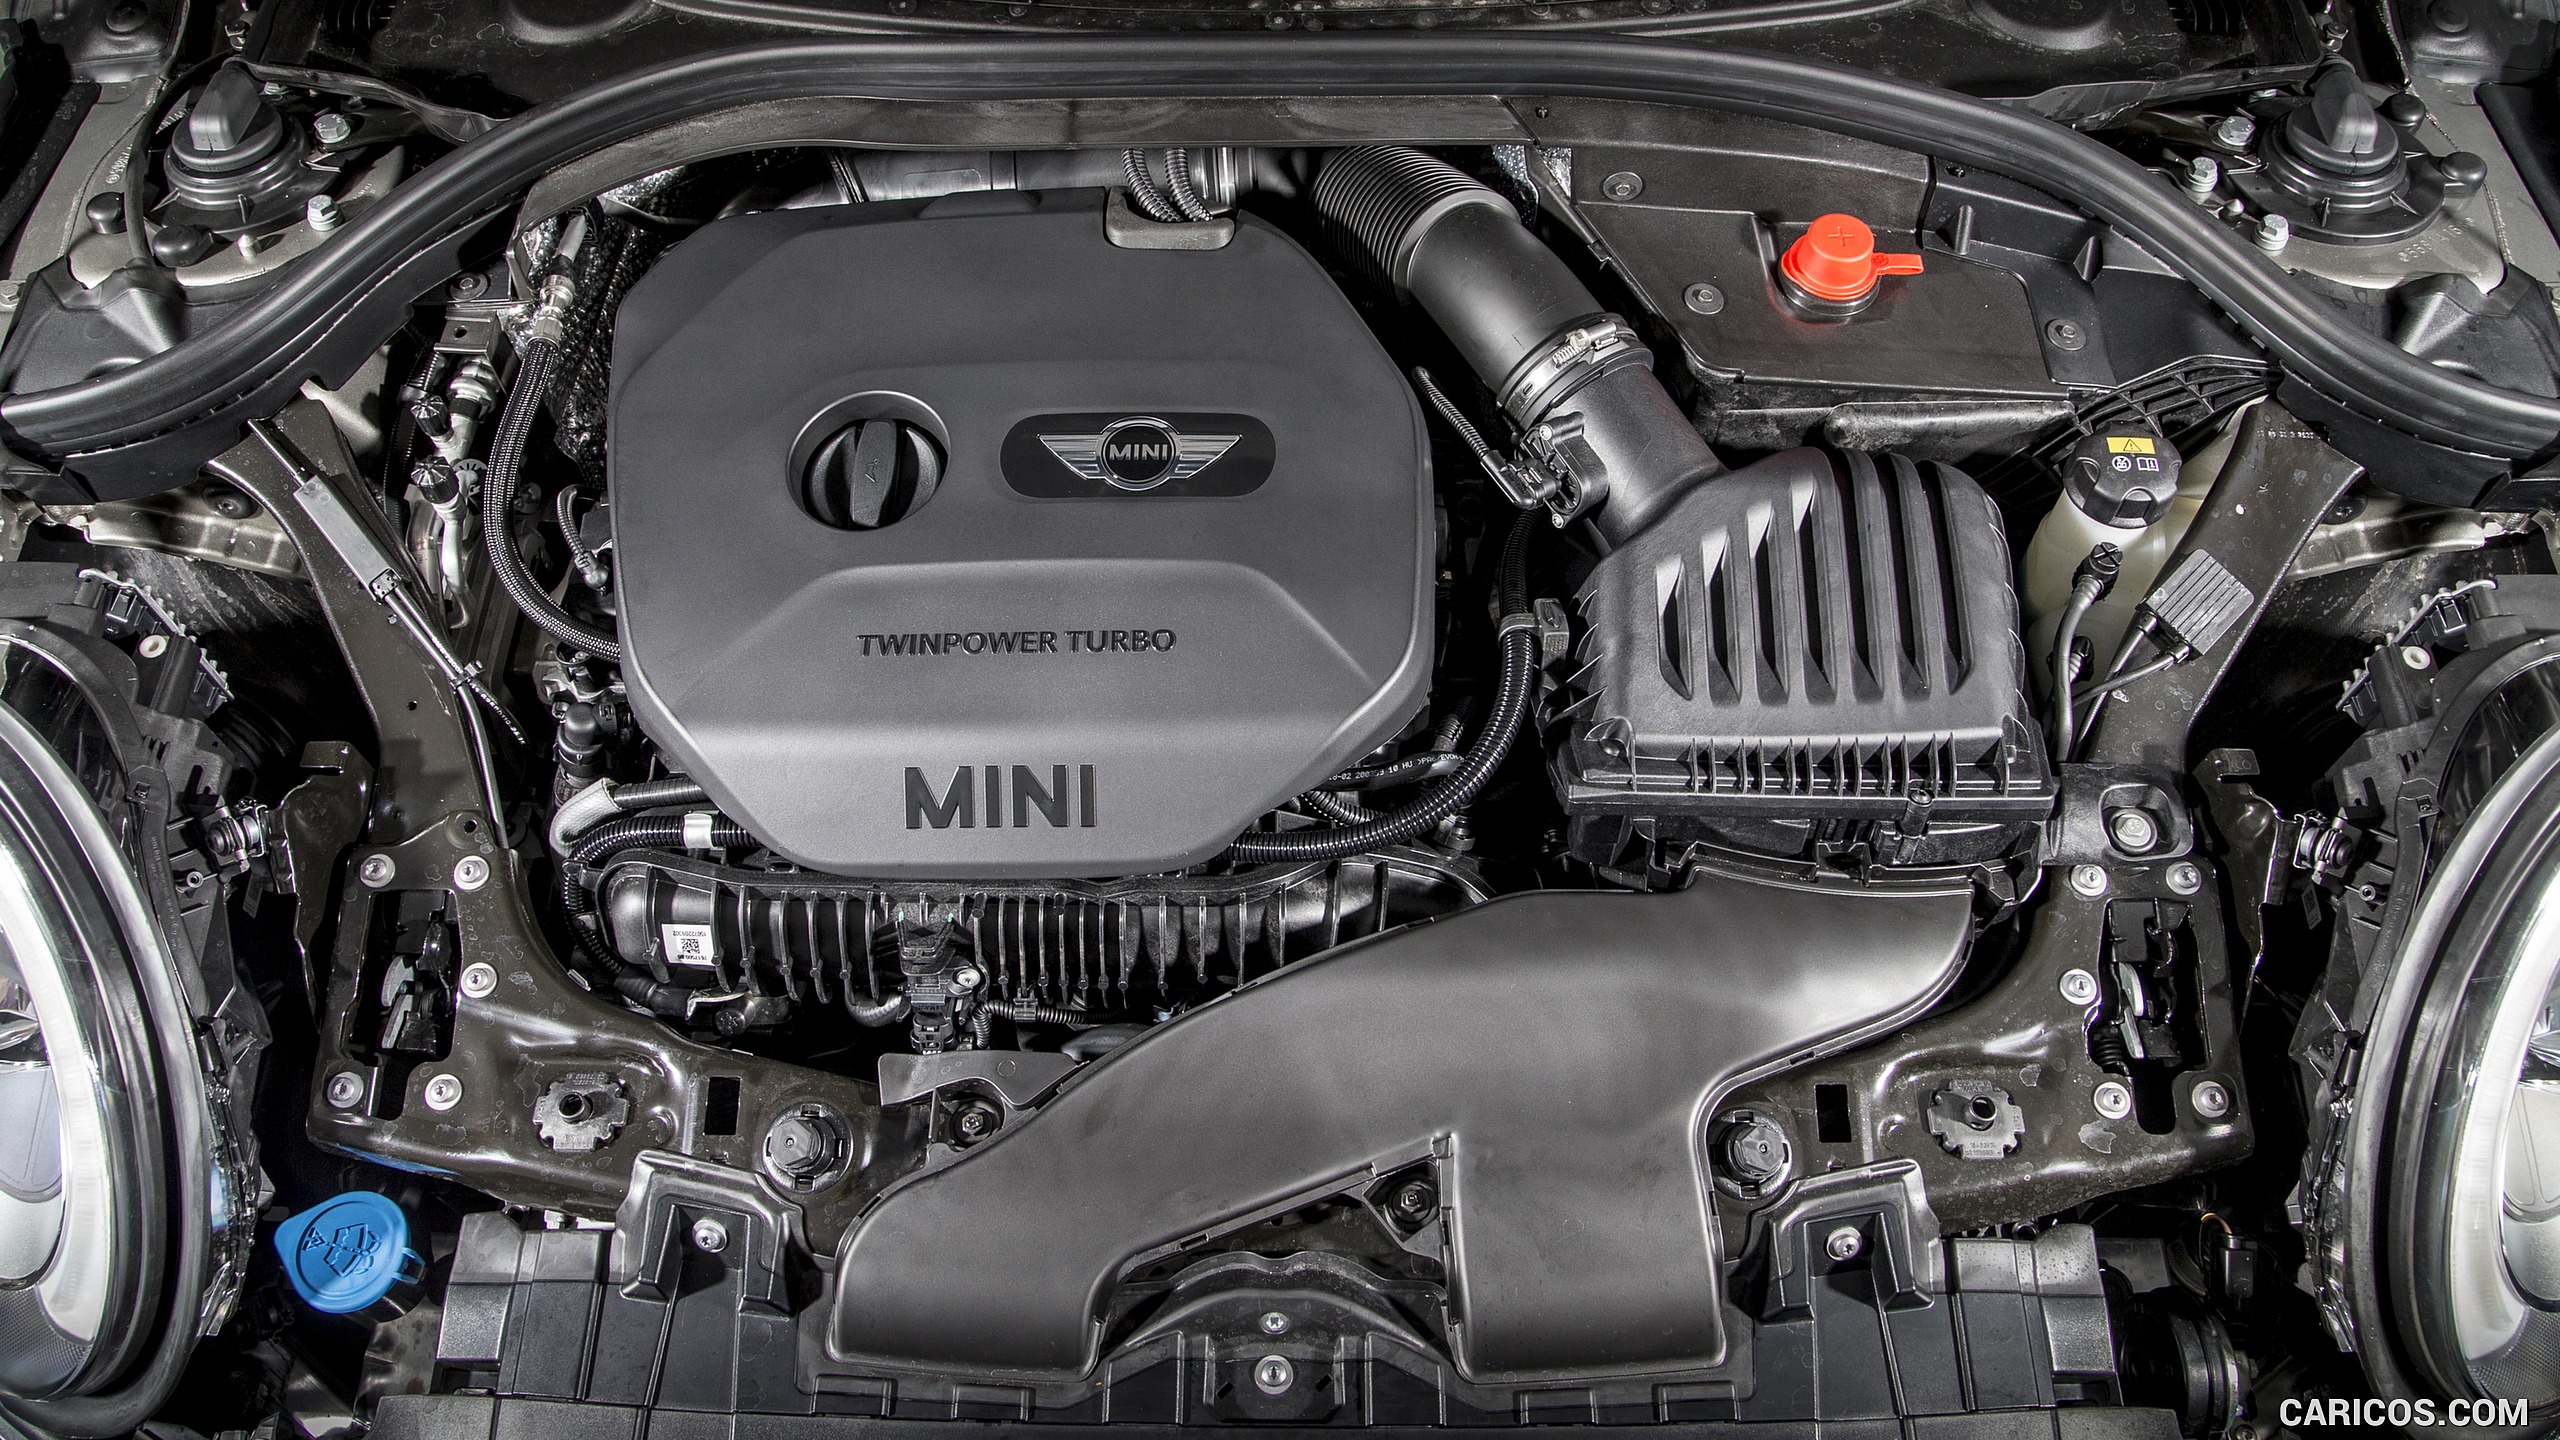 2016 MINI Cooper Clubman S (UK-Spec) - Engine, #237 of 275